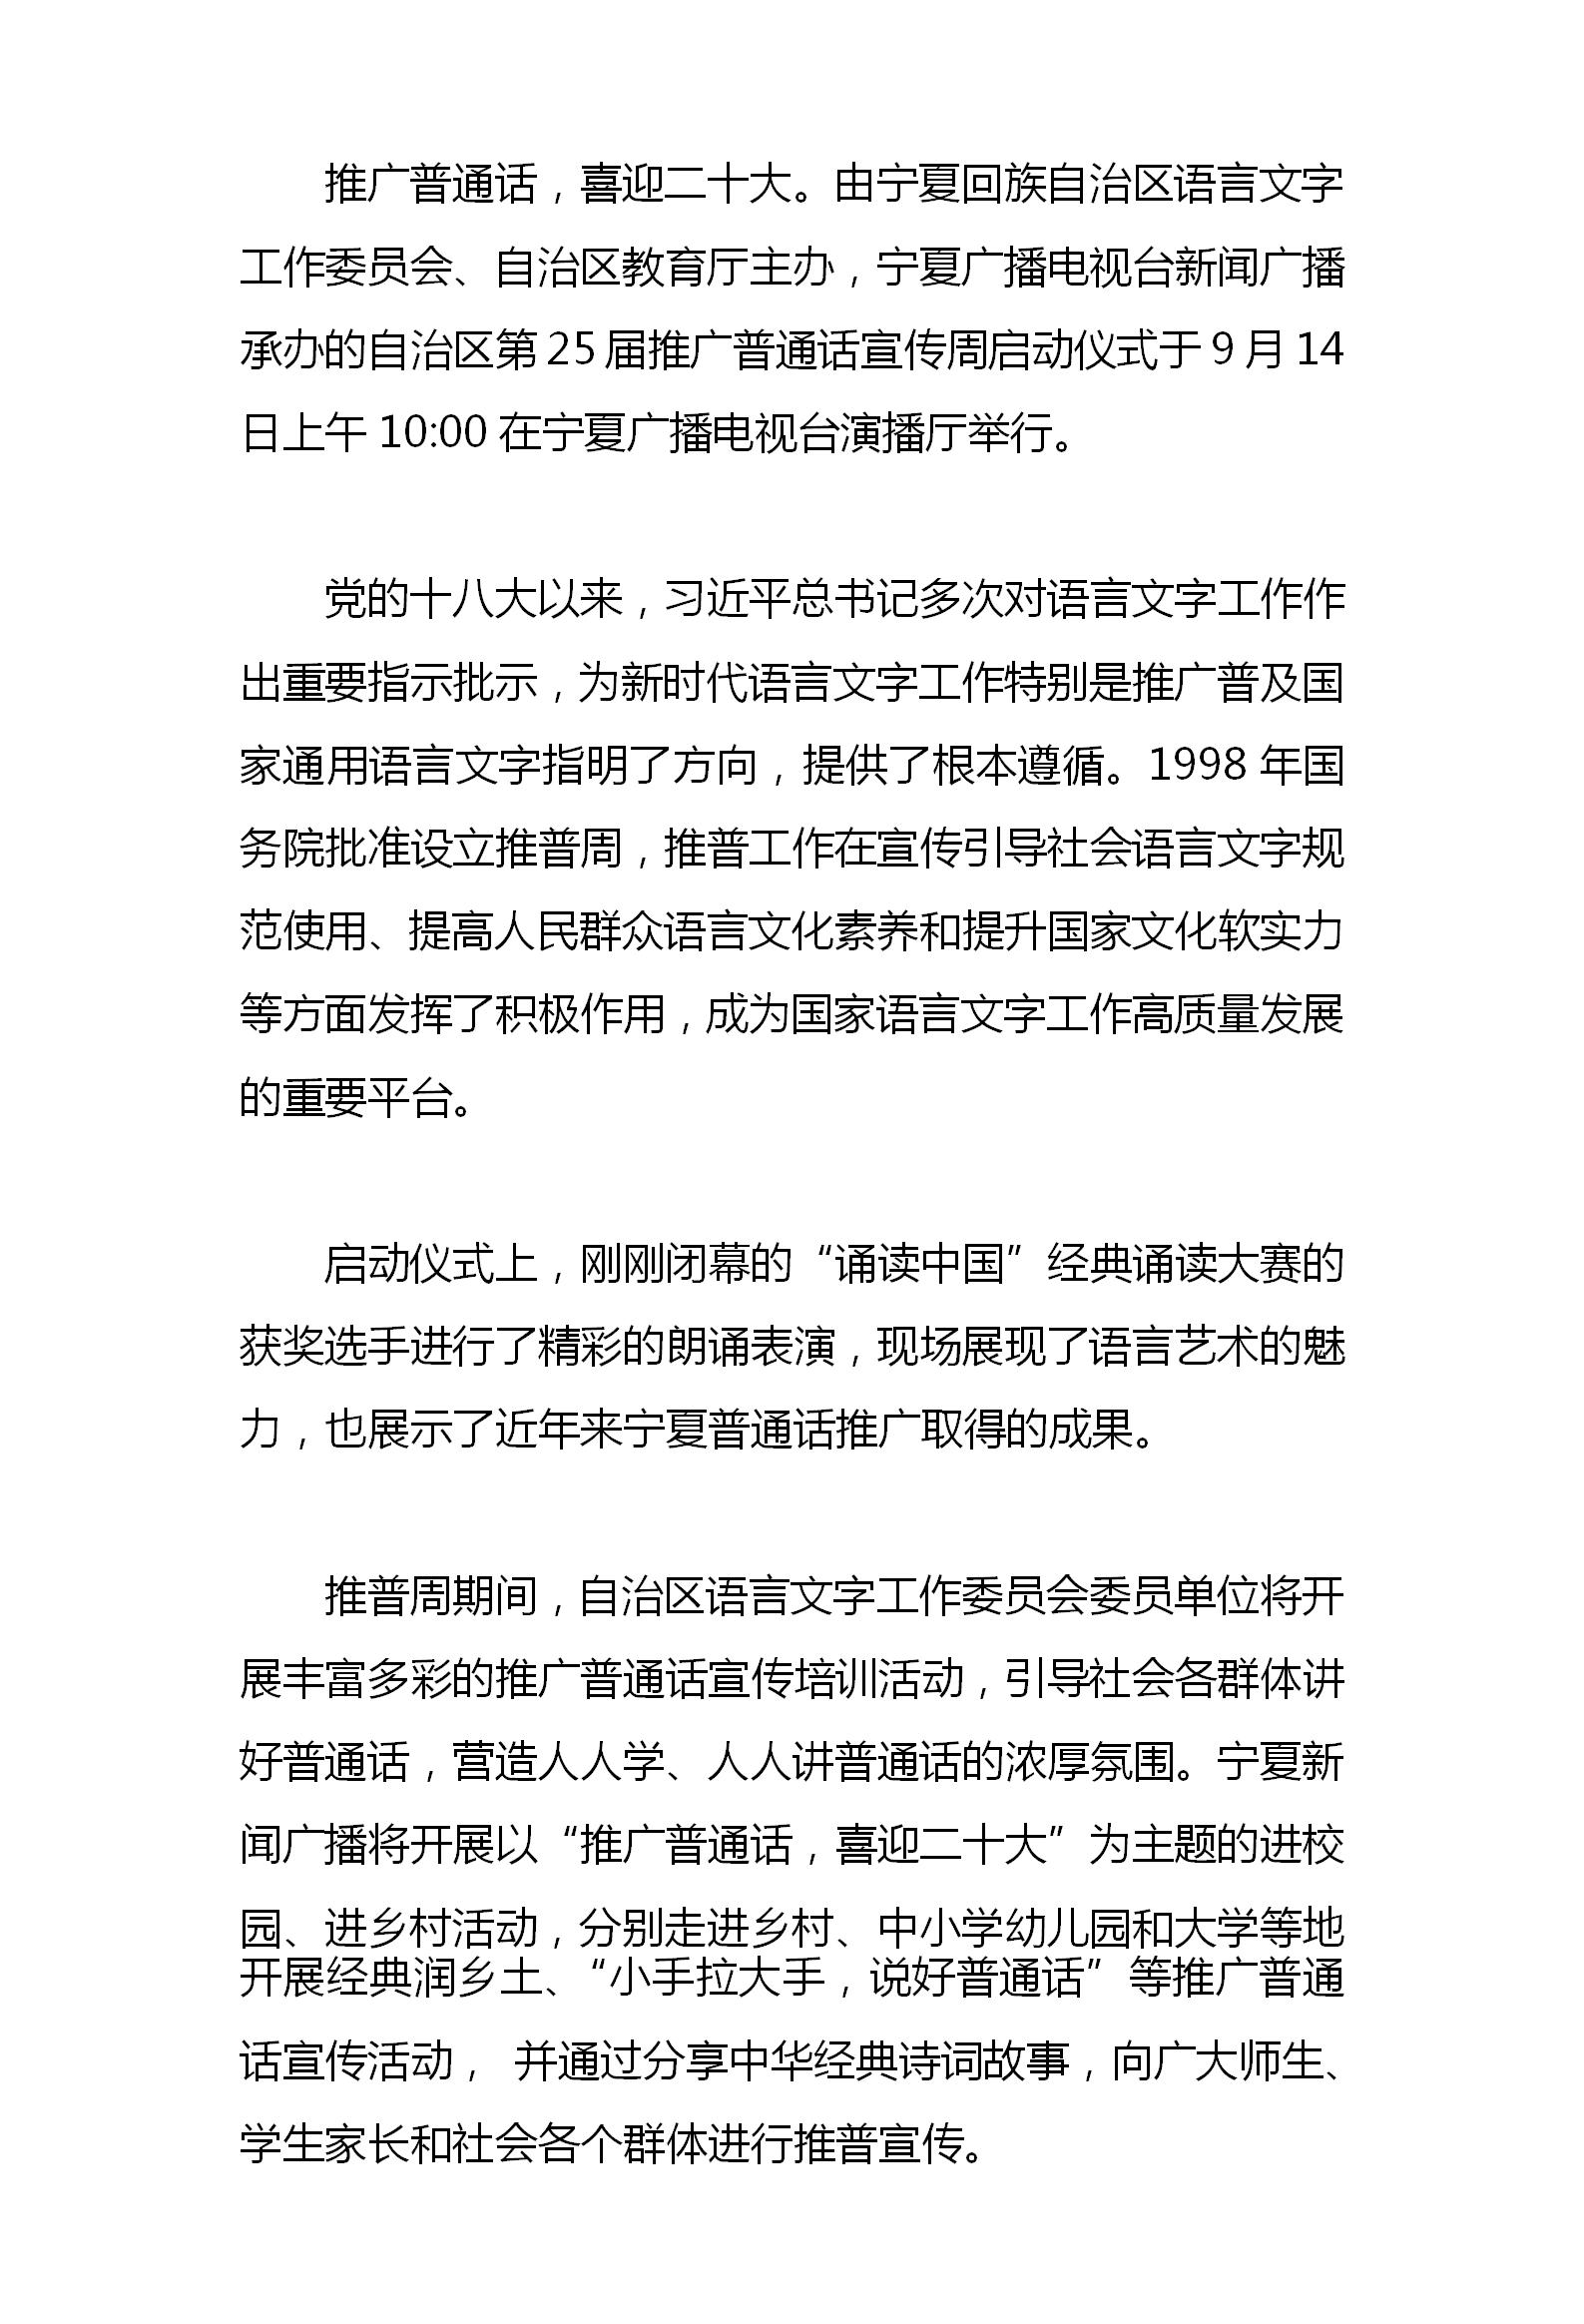 自治区第25届推广普通话宣传周正式启动